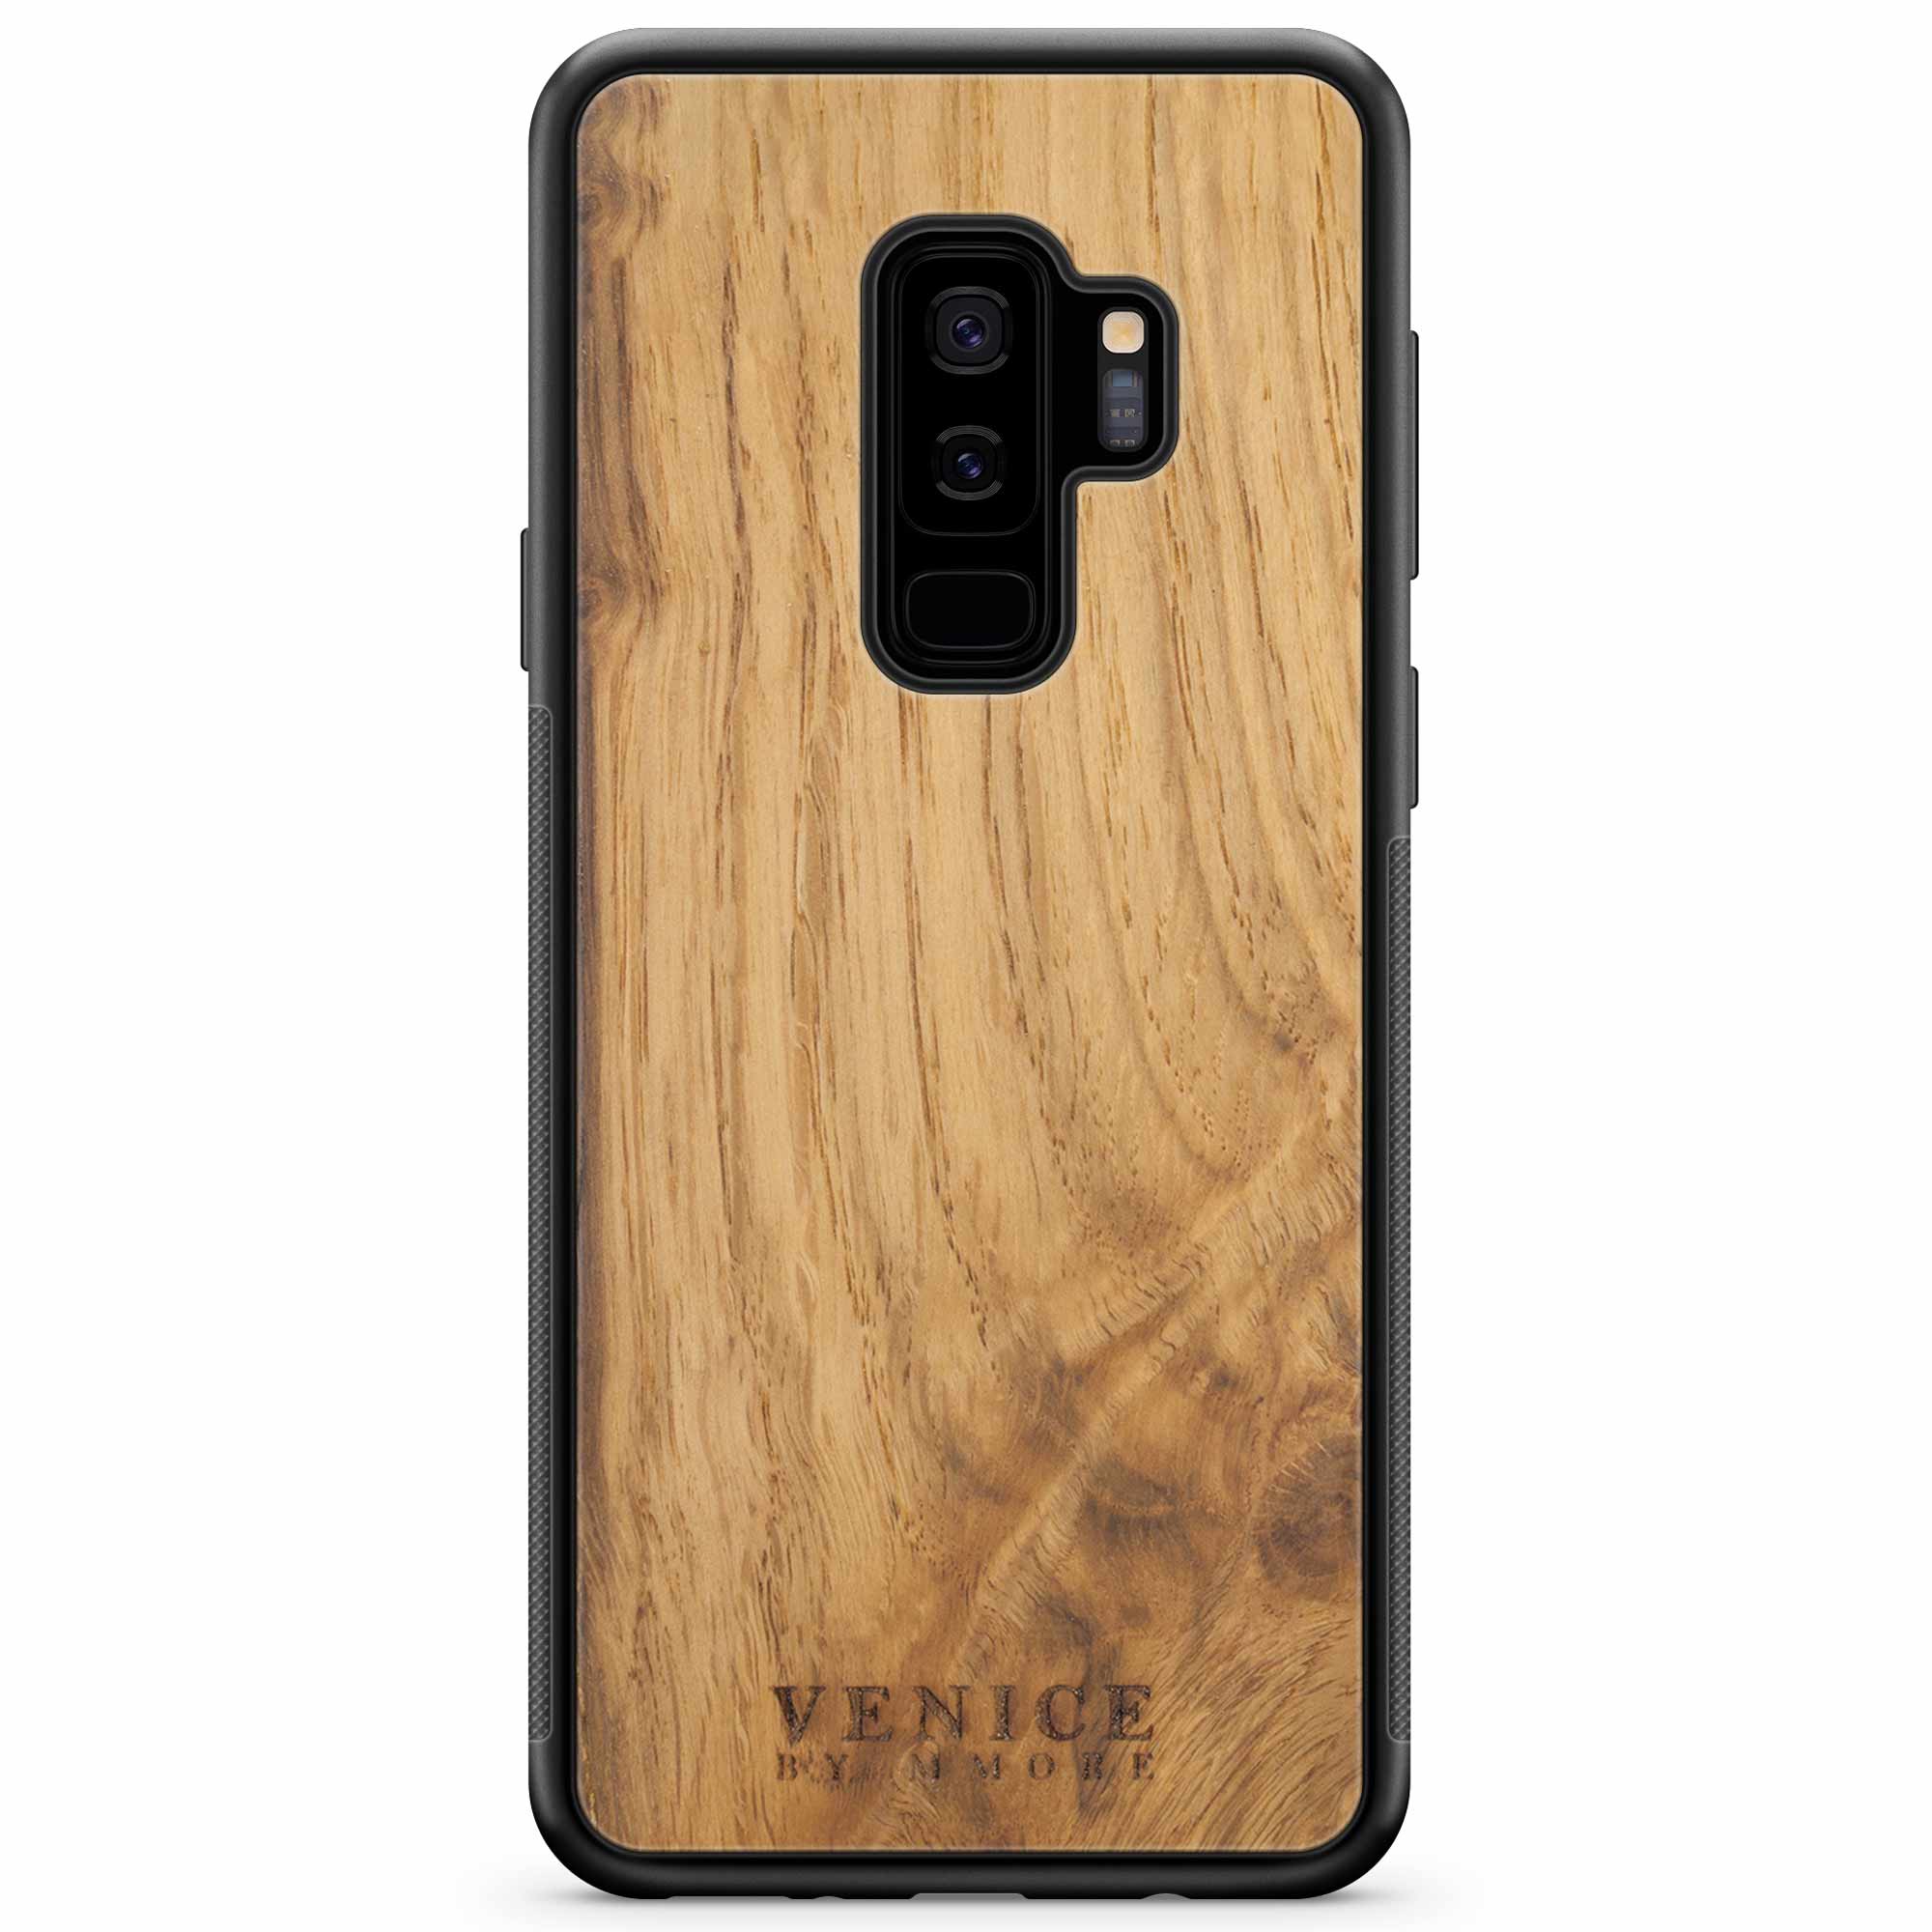 Coque de téléphone en bois pour Samsung S9 Plus avec lettrage de Venise